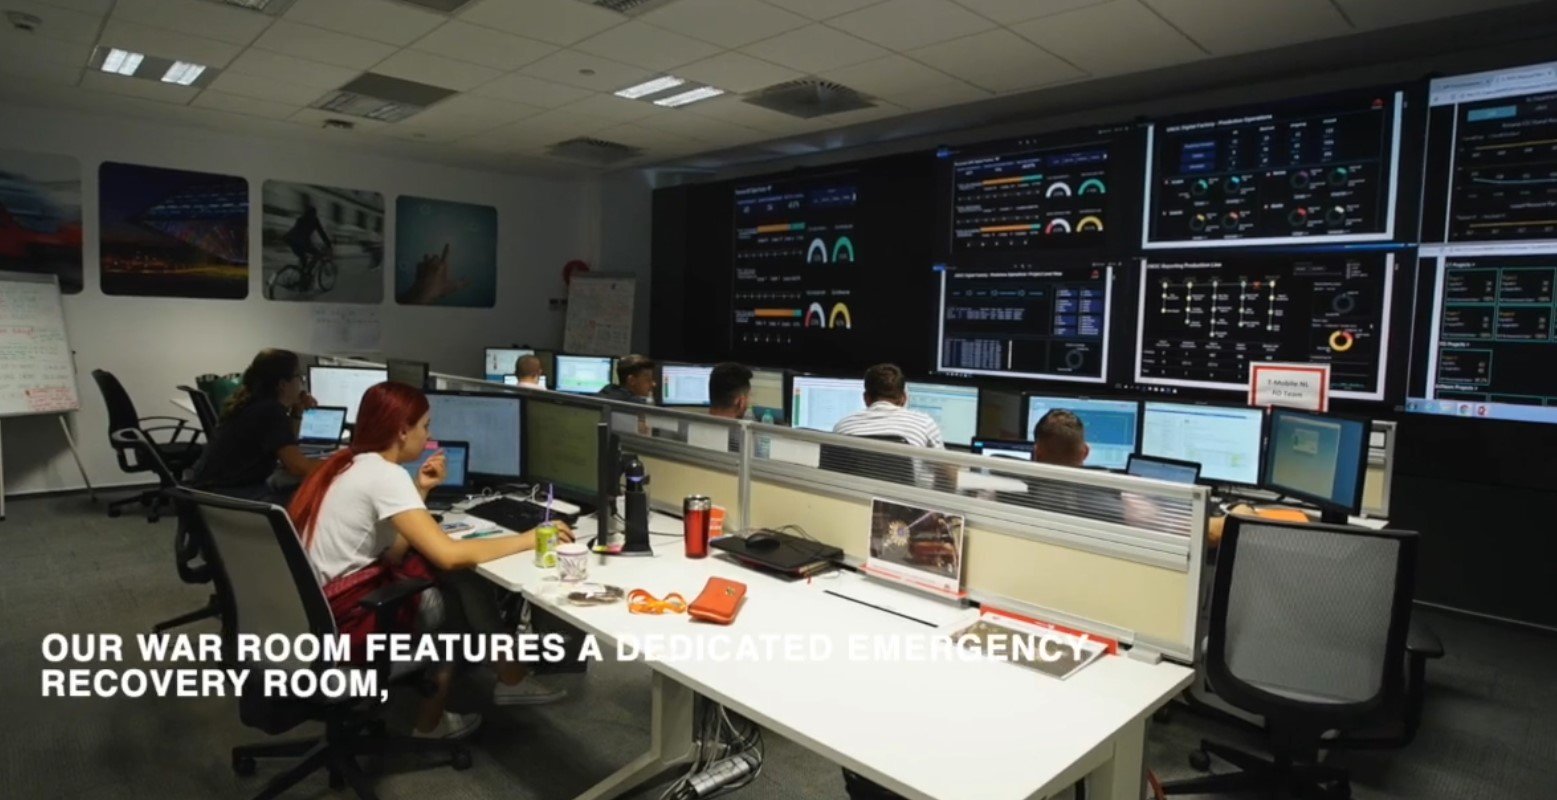 VIDEO Huawei România prezintă Global Service Center, deschis în țara noastră în 2012